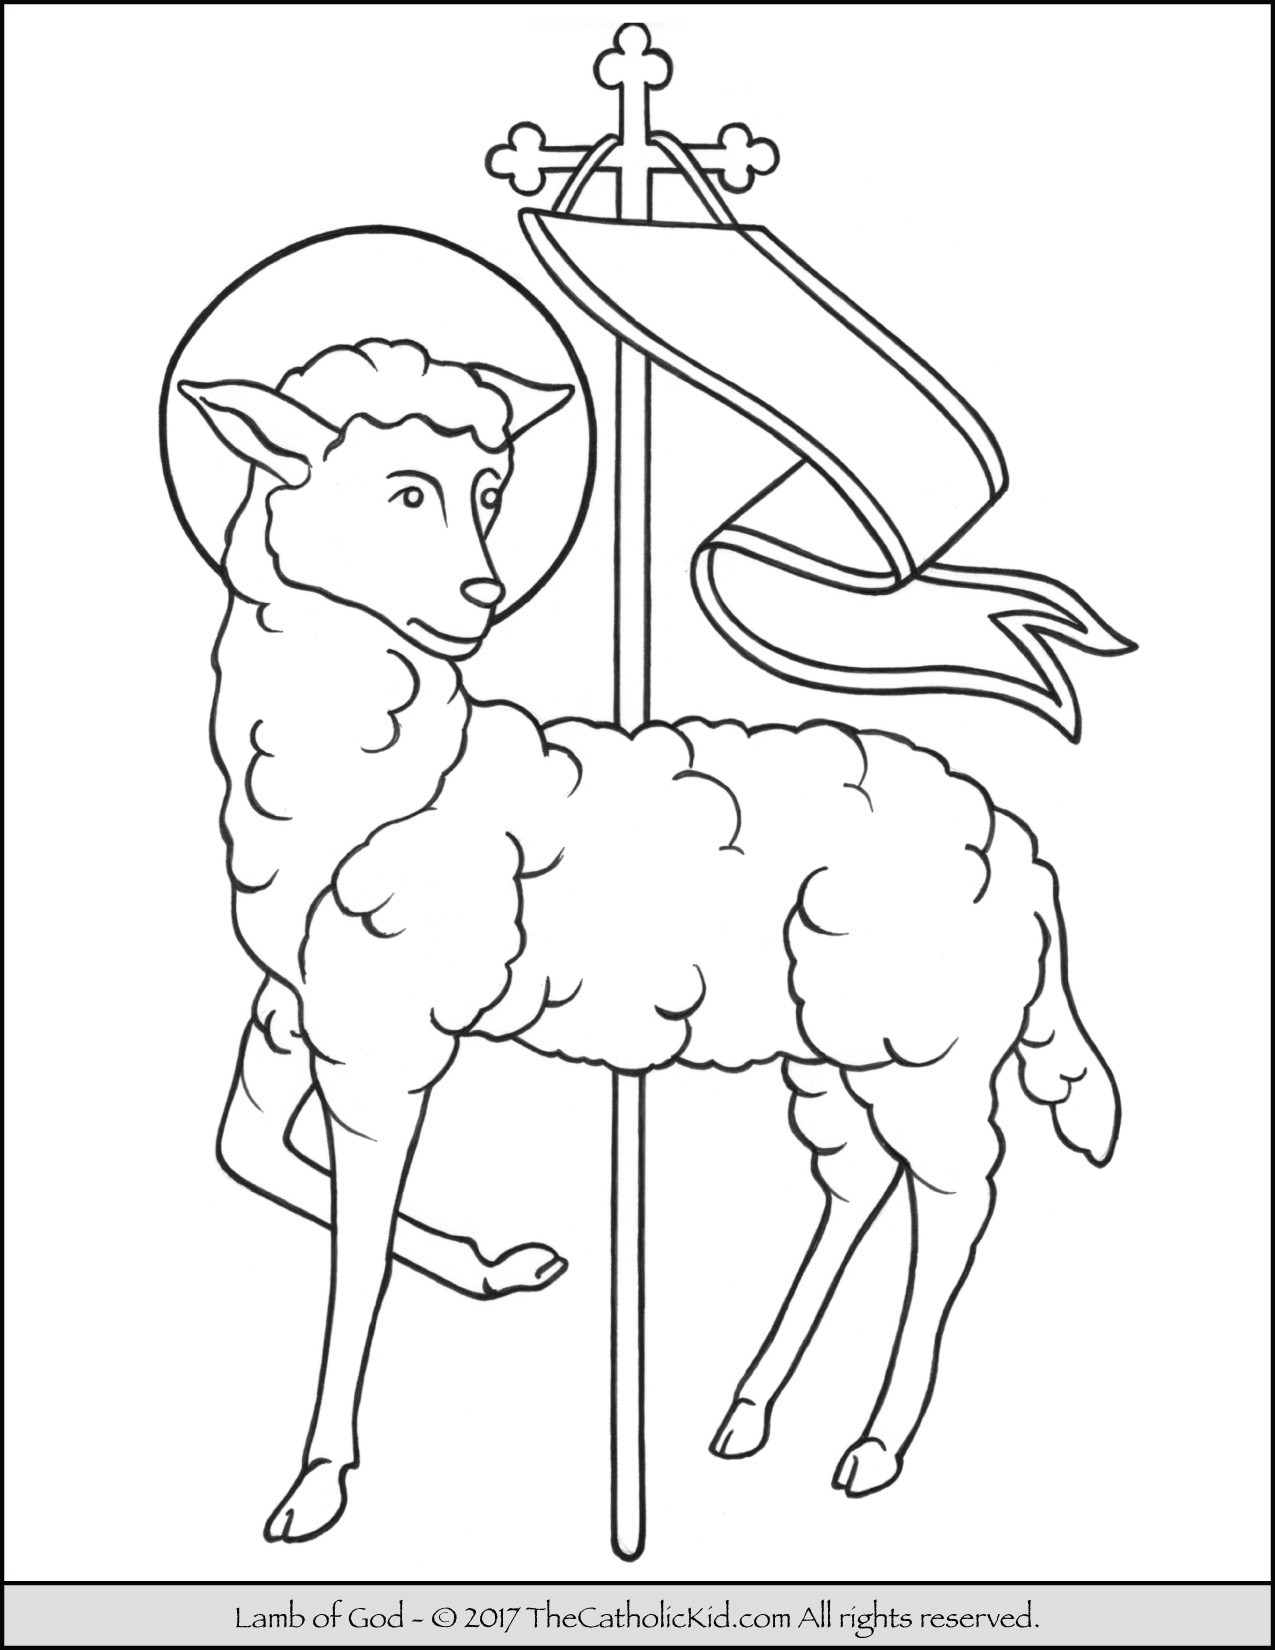 Lamb Of God Drawing at Explore collection of Lamb